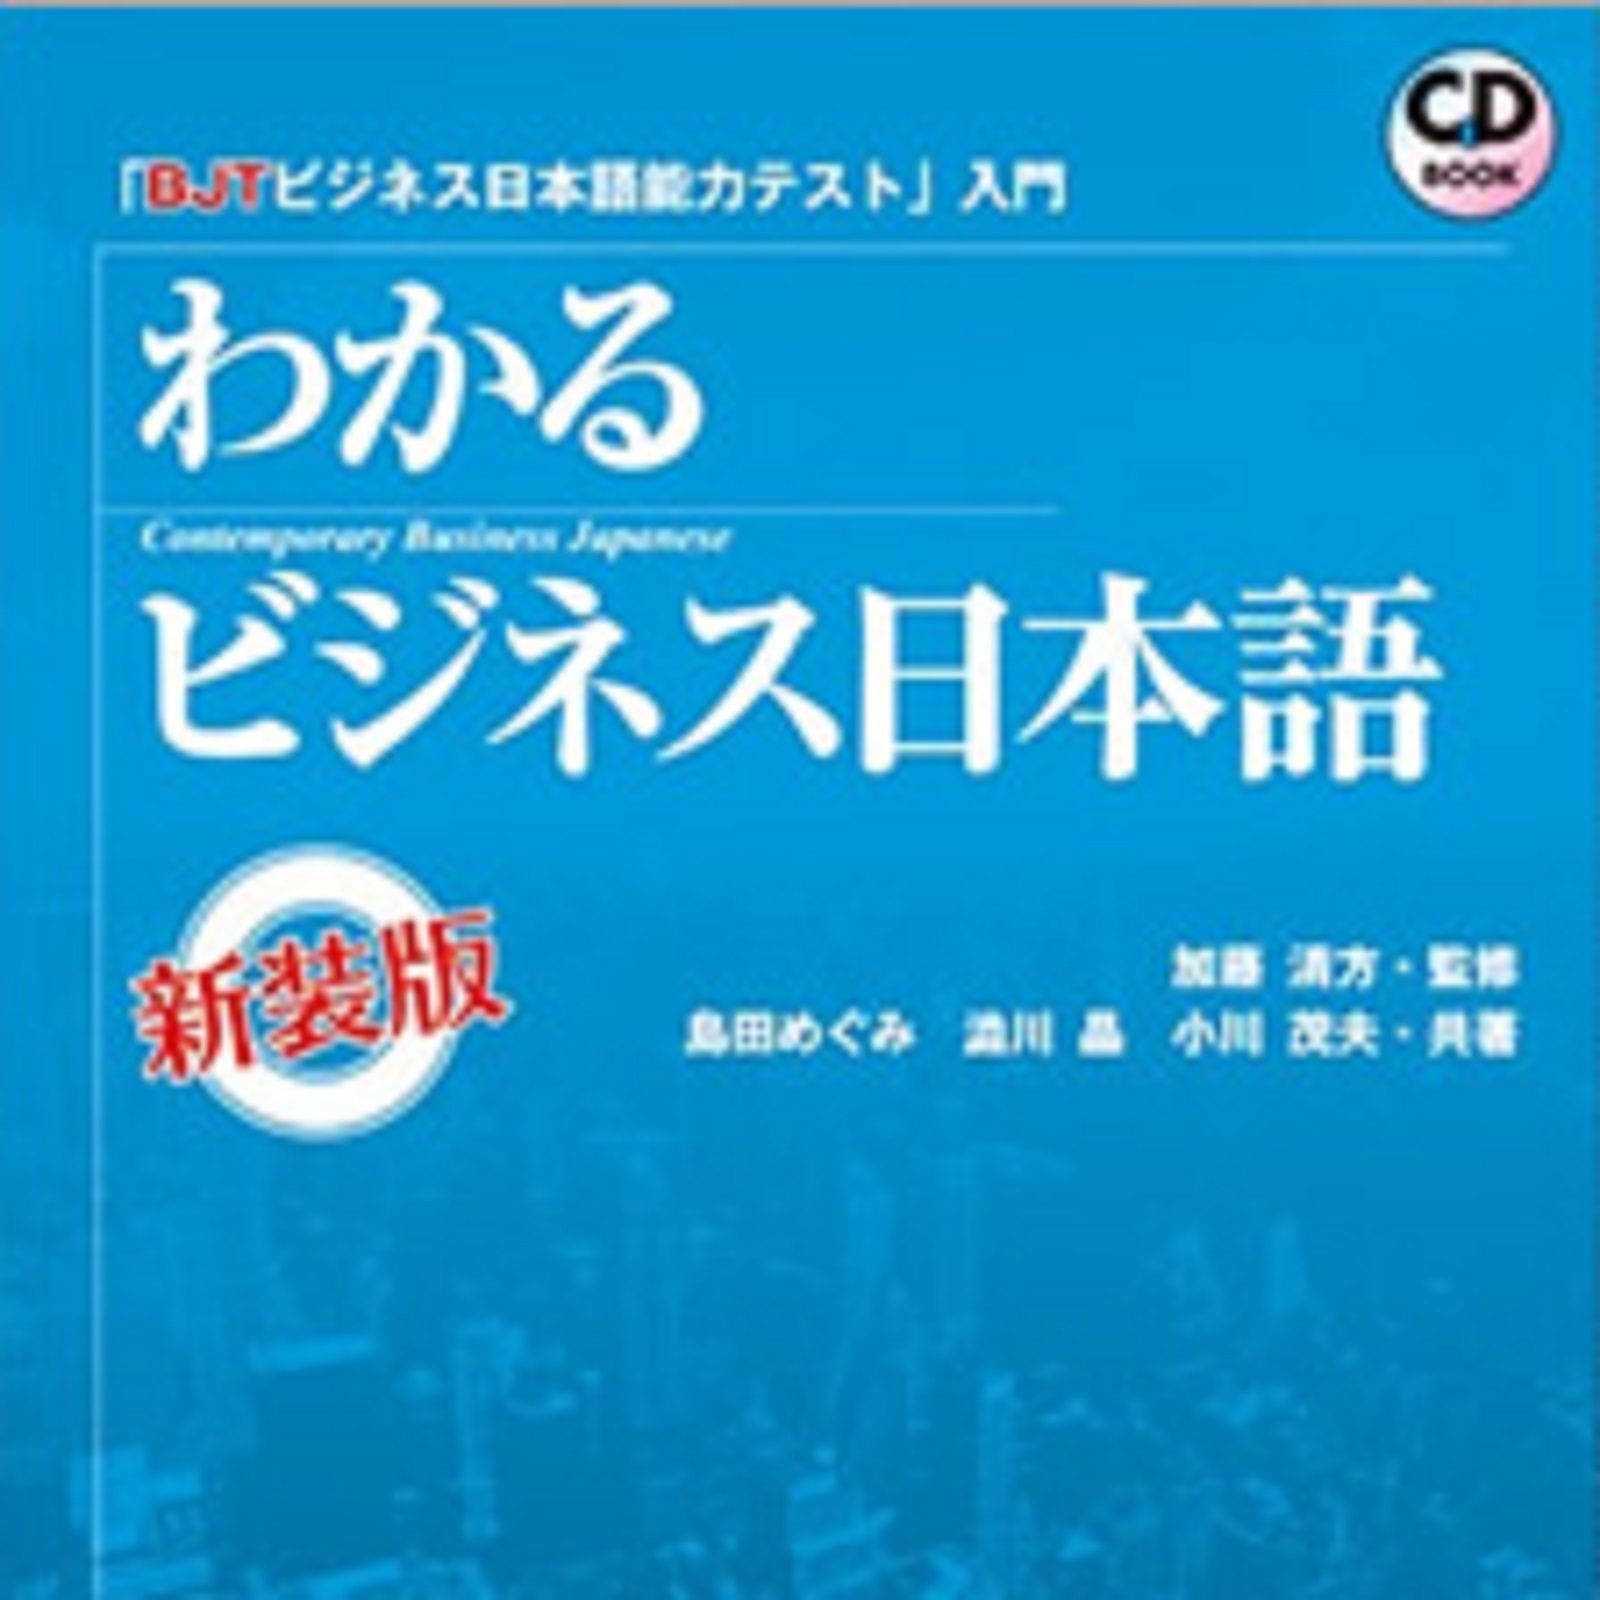 海外 BJTビジネス日本語能力テスト 公式 模擬テストガイド iauoe.edu.ng